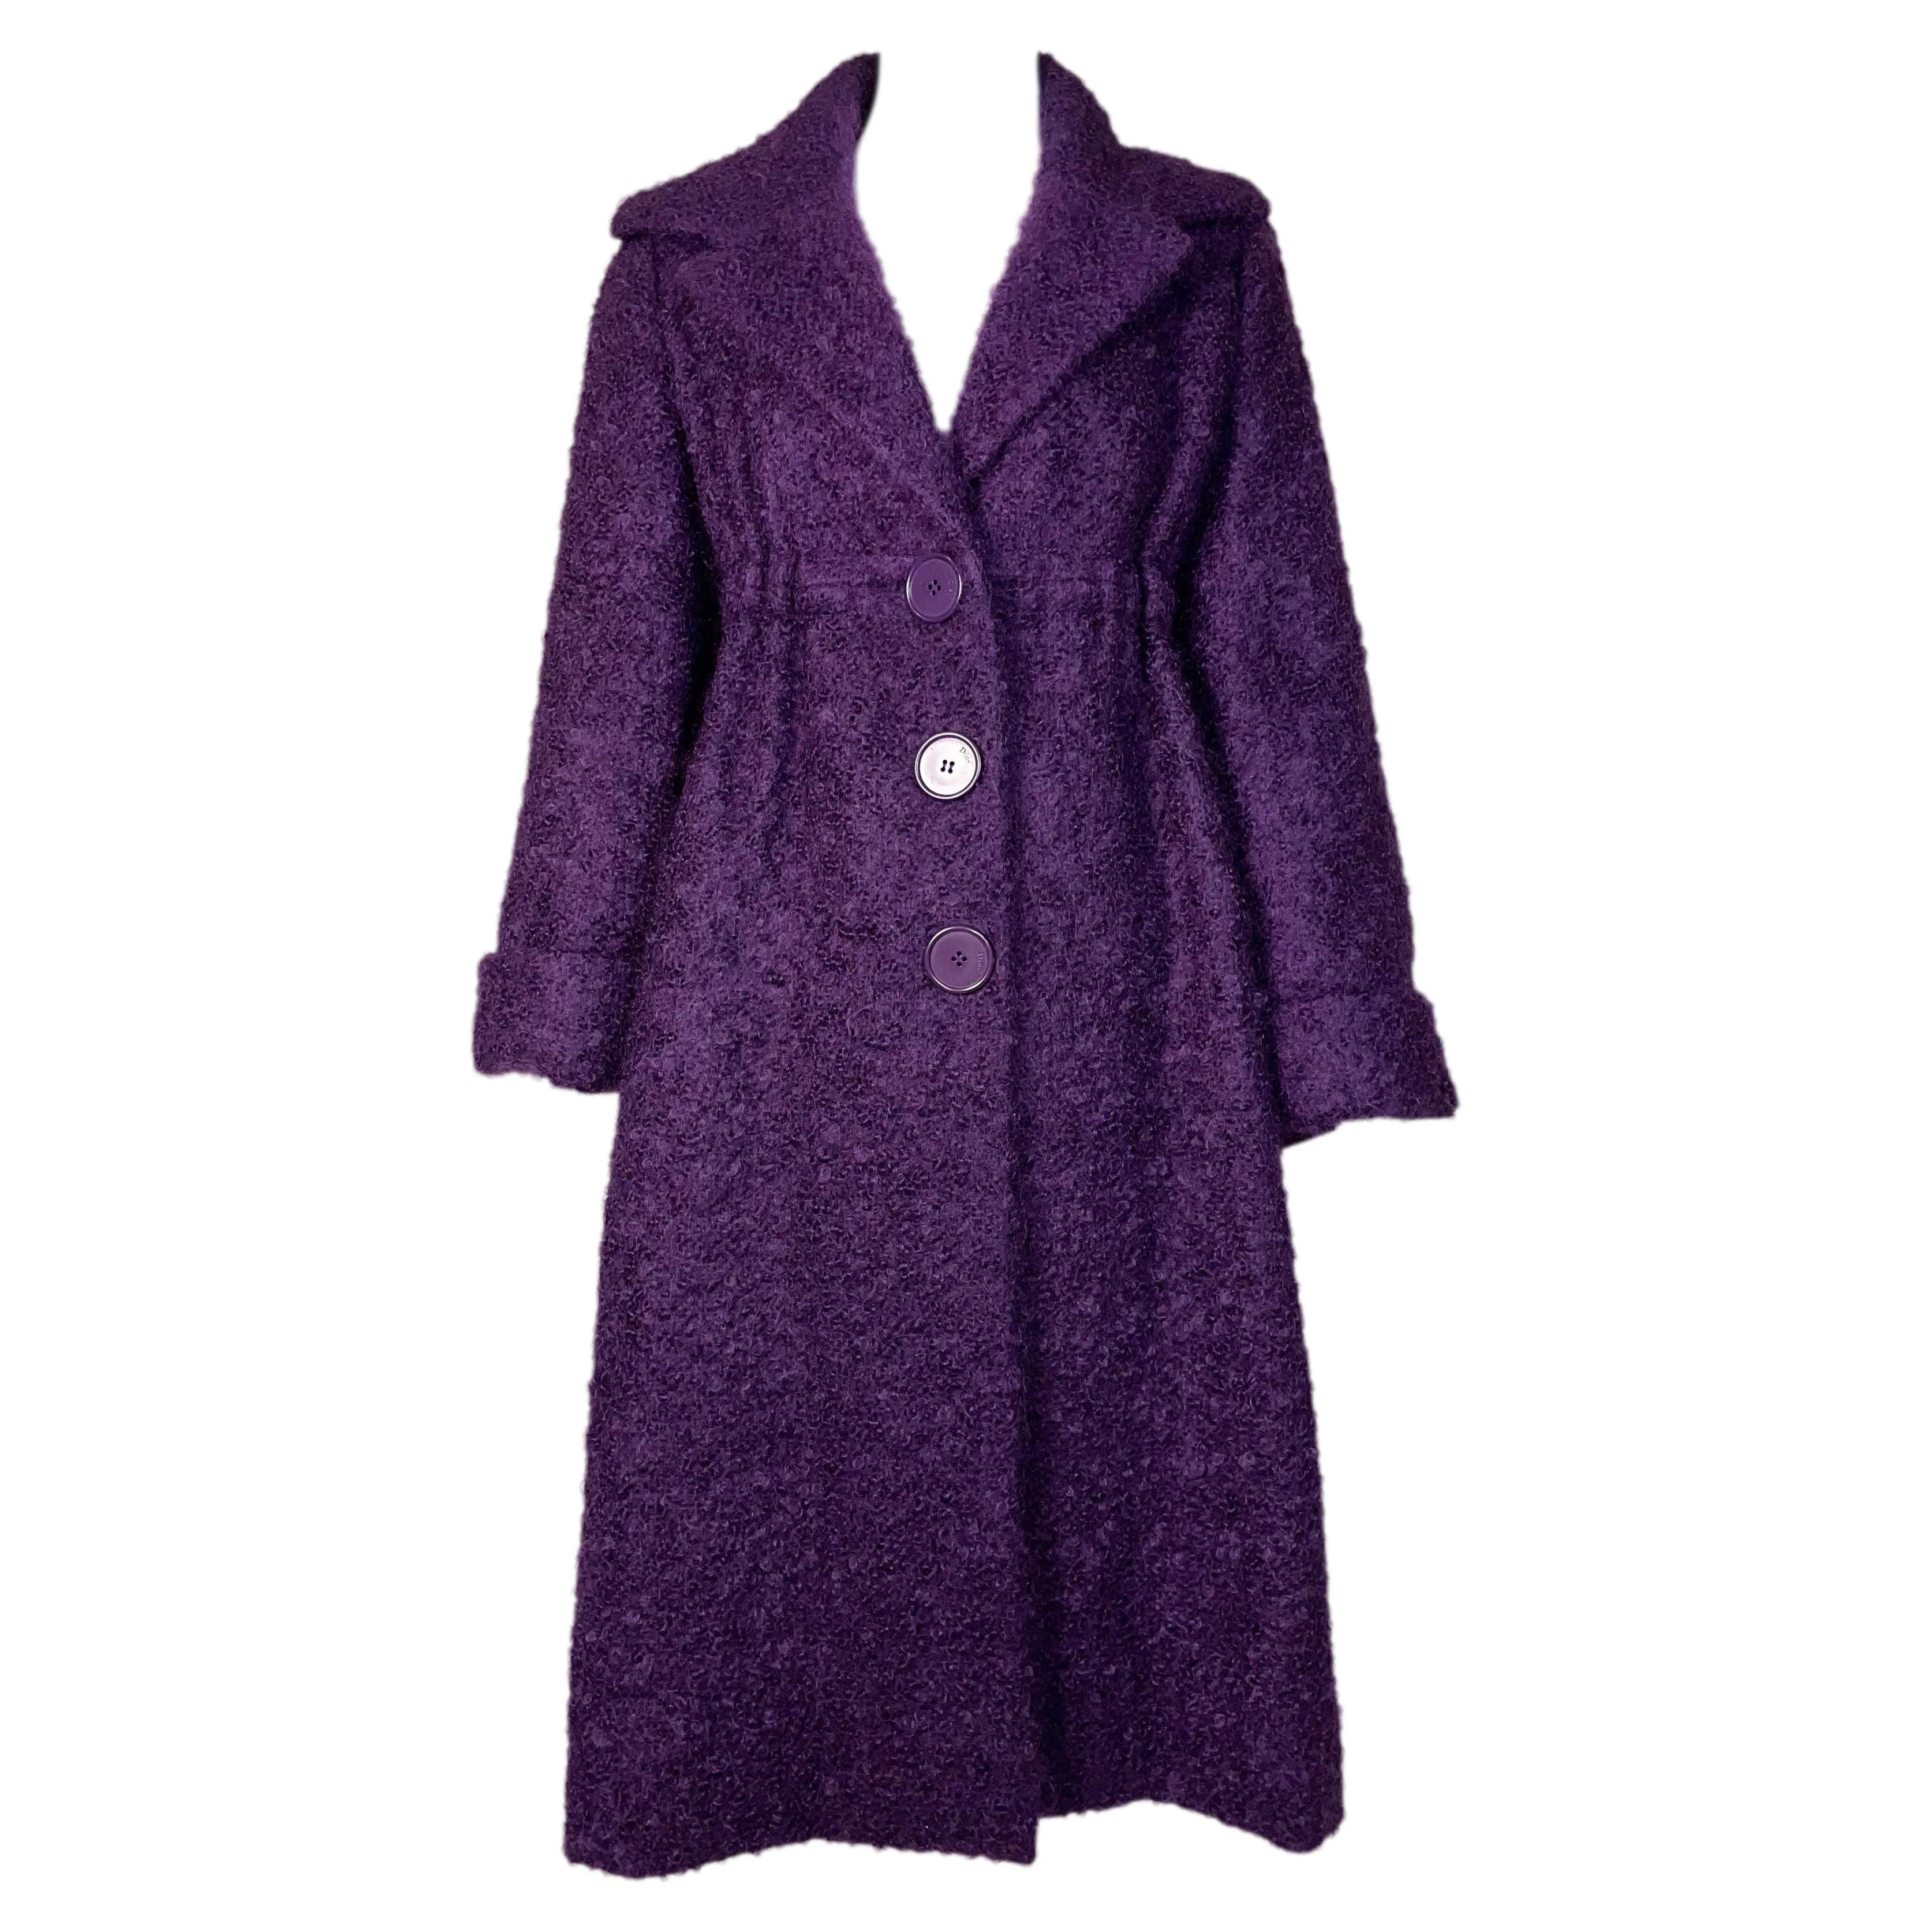 F/W 2009 Christian Dior by John Galliano Haute Couture 1960's Style Purple Coat